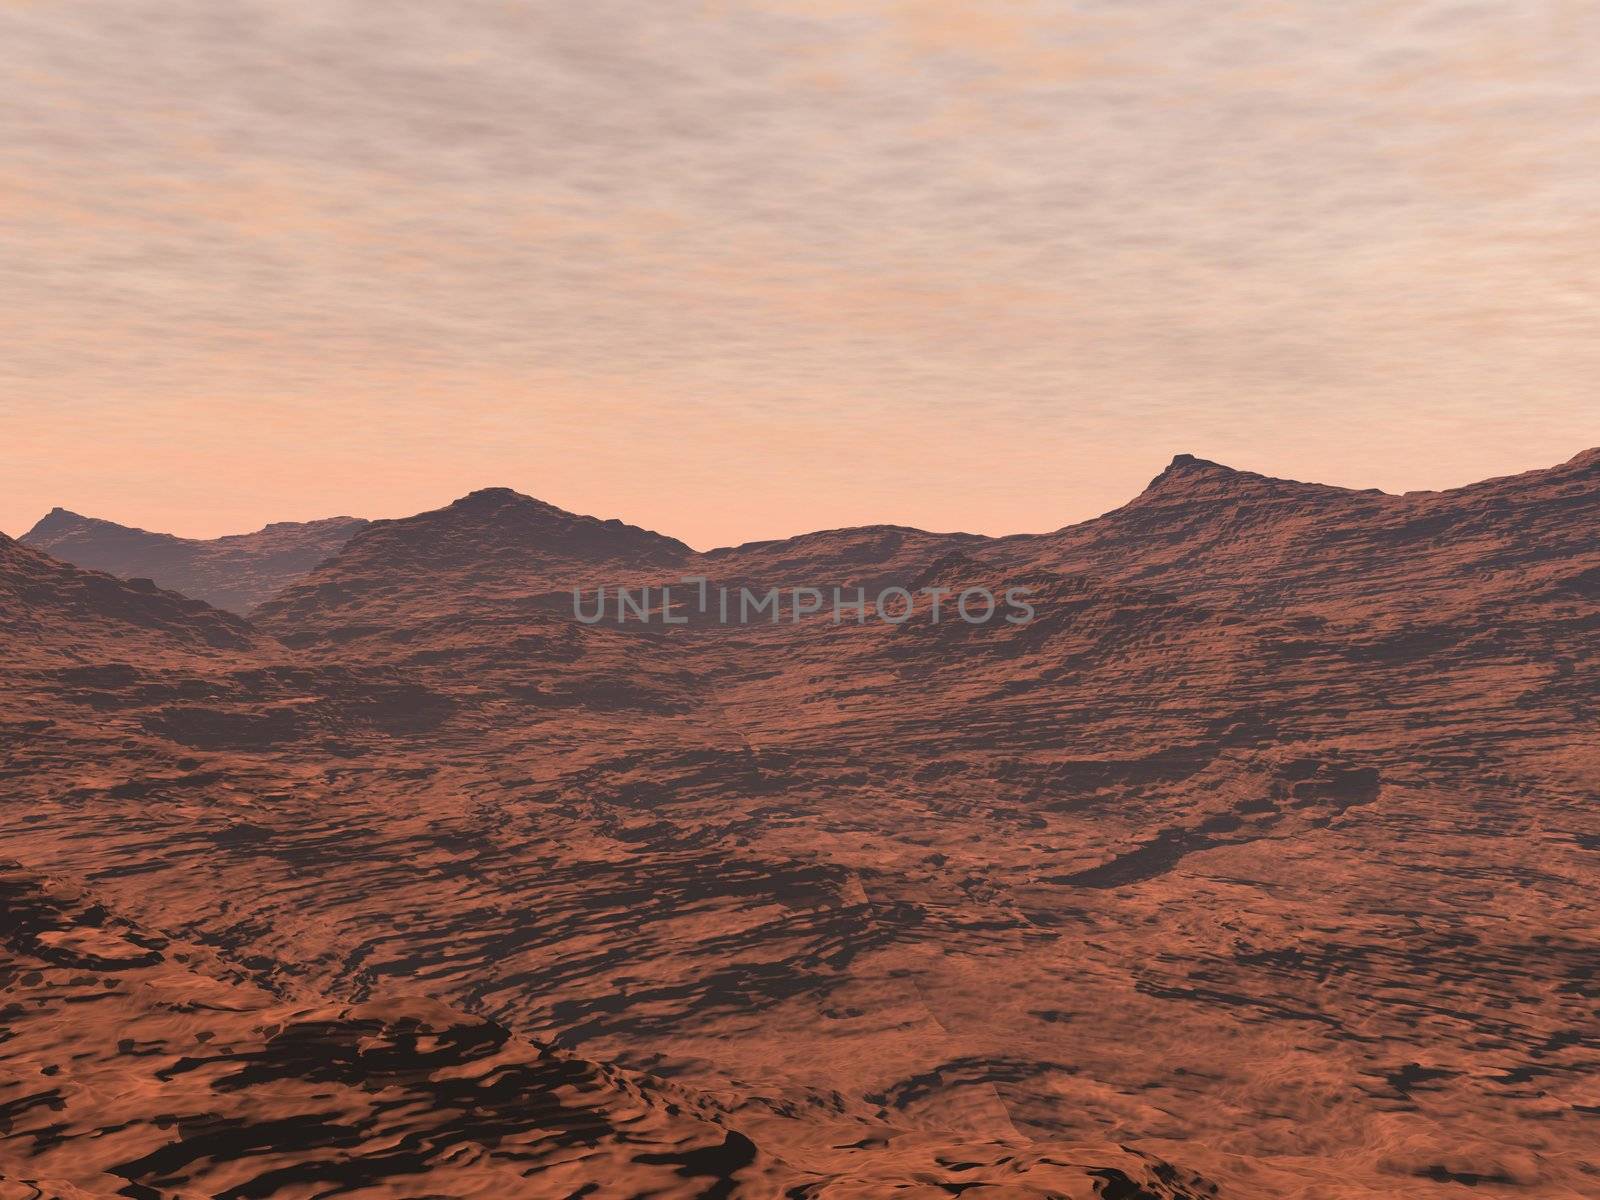 Mars landscape - 3D render by Elenaphotos21